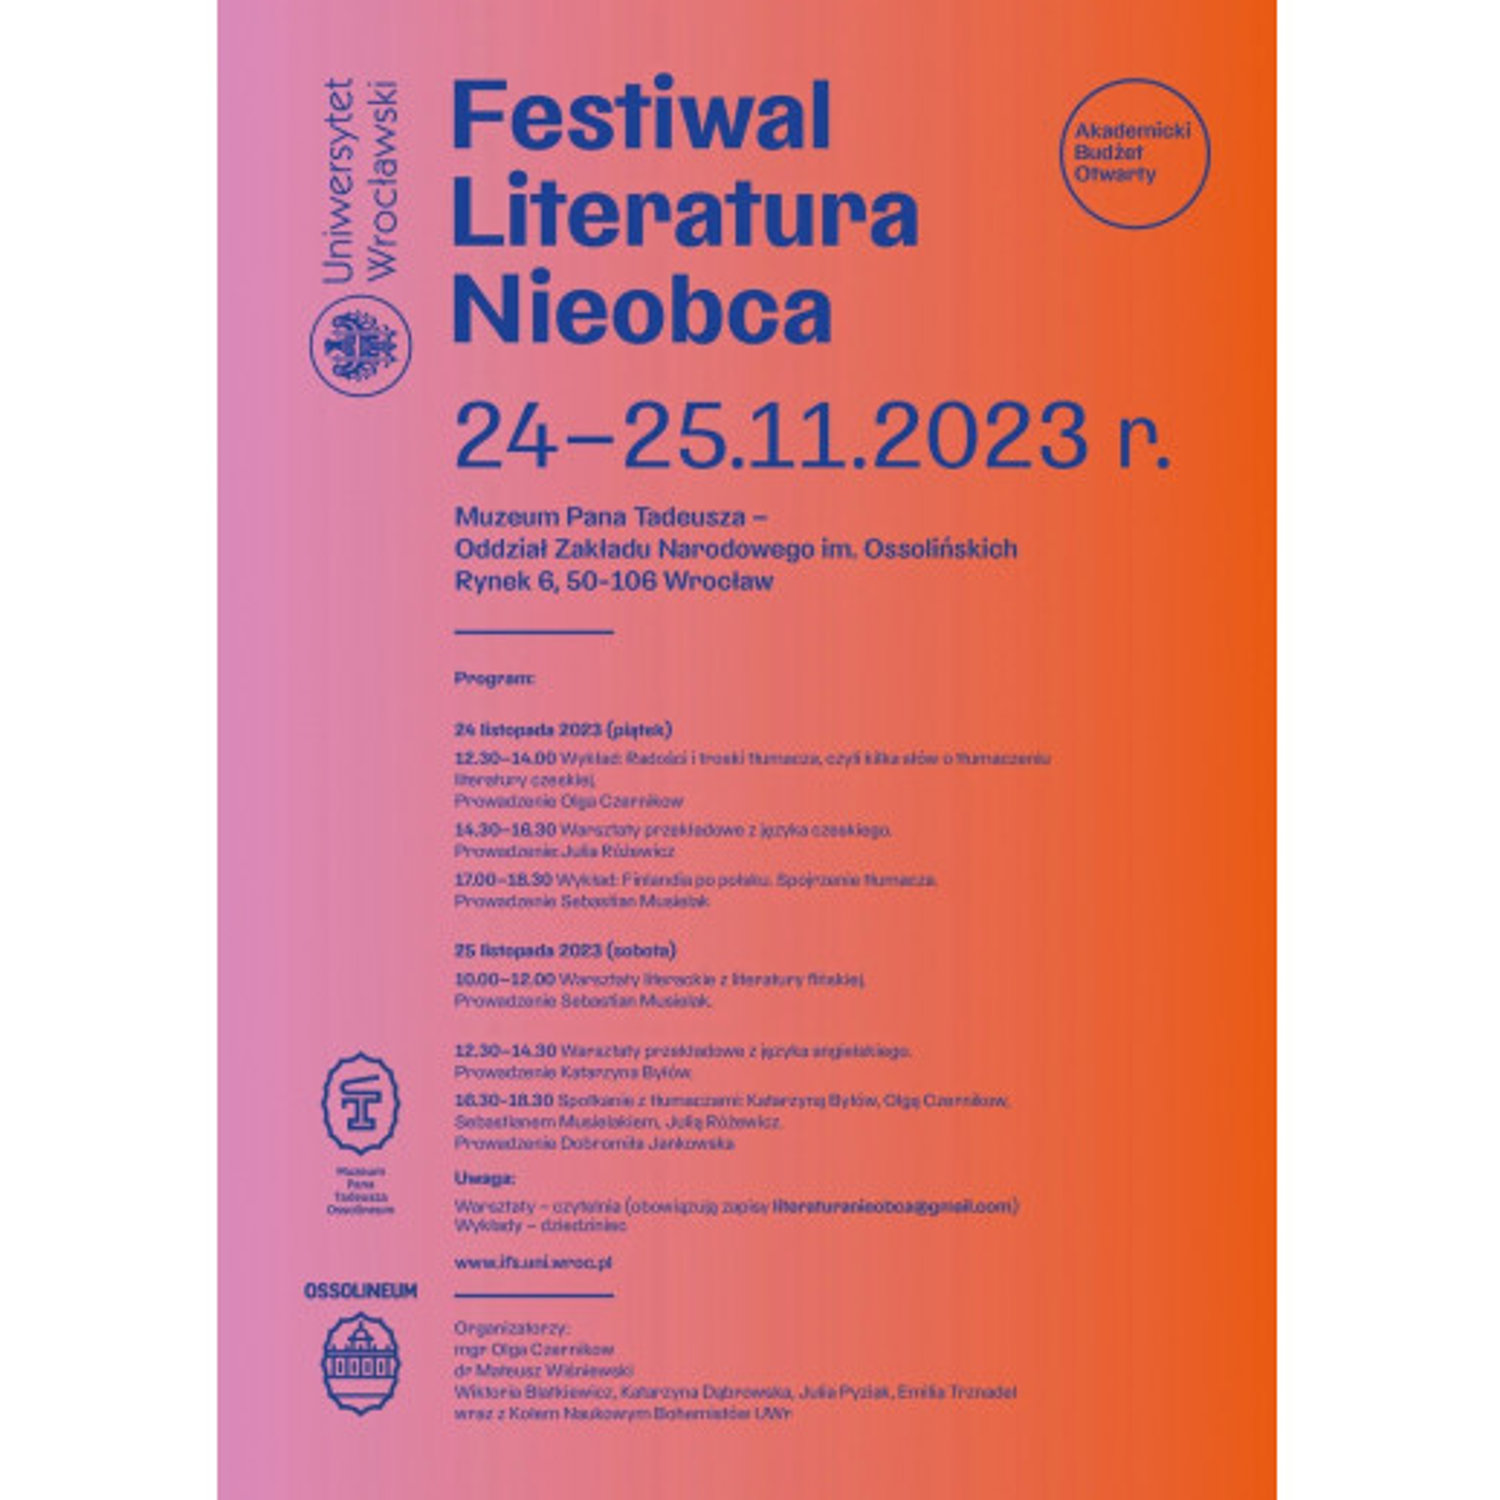 Festiwal Literatura Nieobca już od jutra